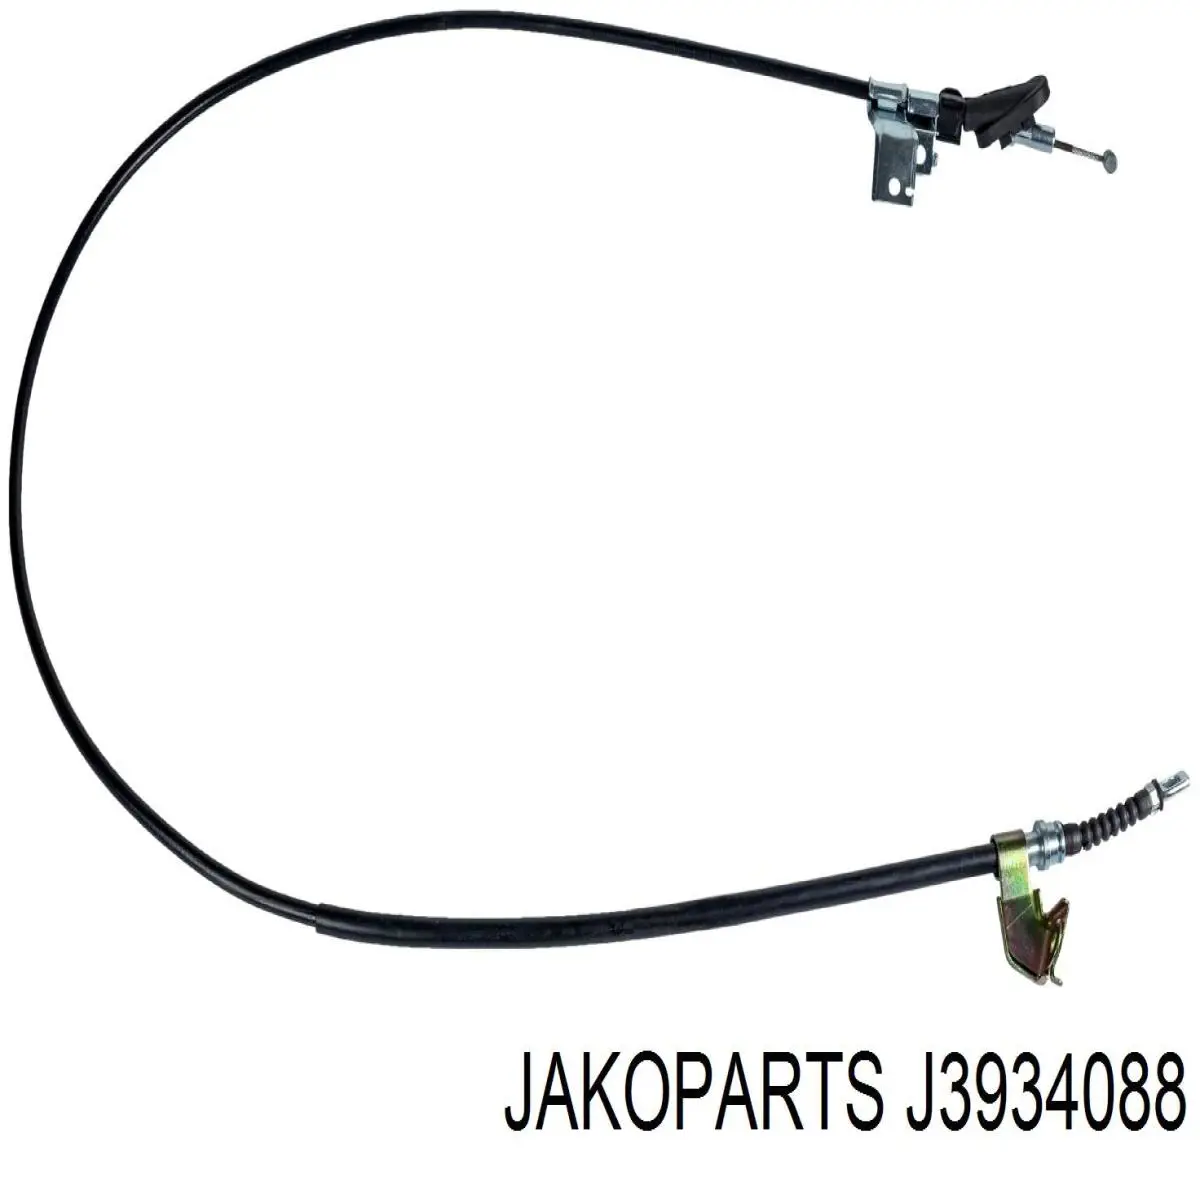 Cable de freno de mano trasero derecho J3934088 Jakoparts